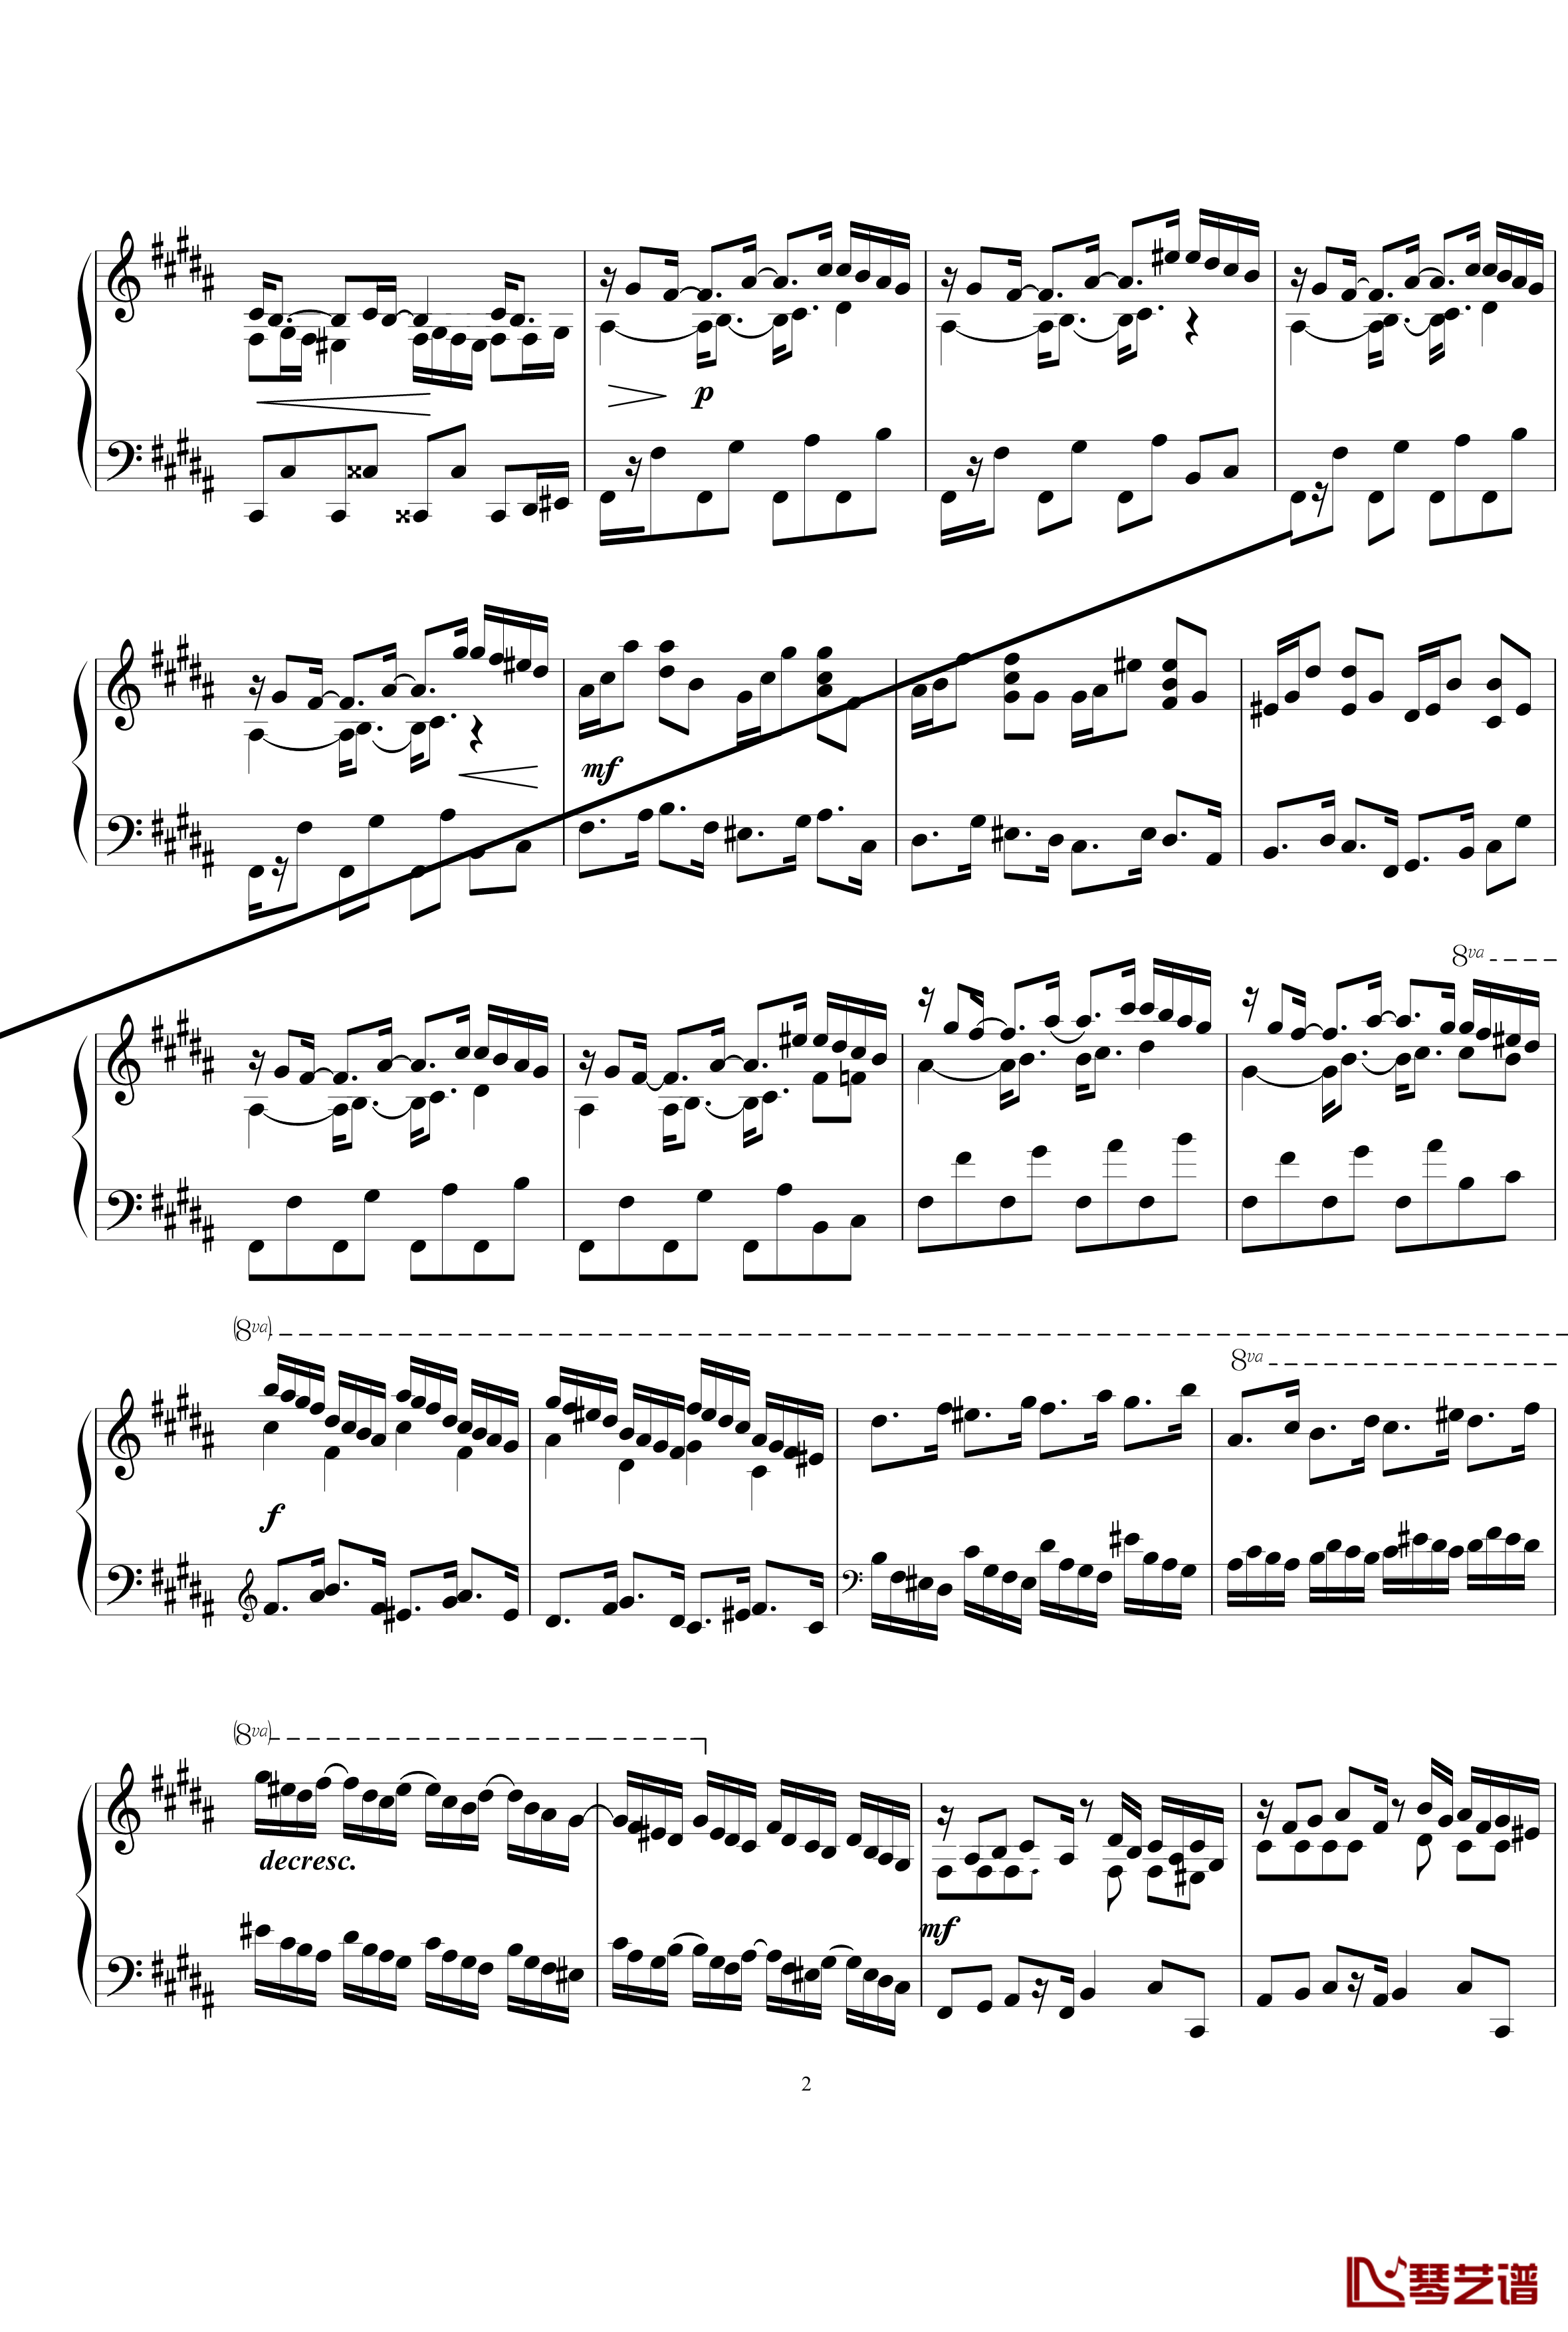 练习曲钢琴谱1.5-gzf1352